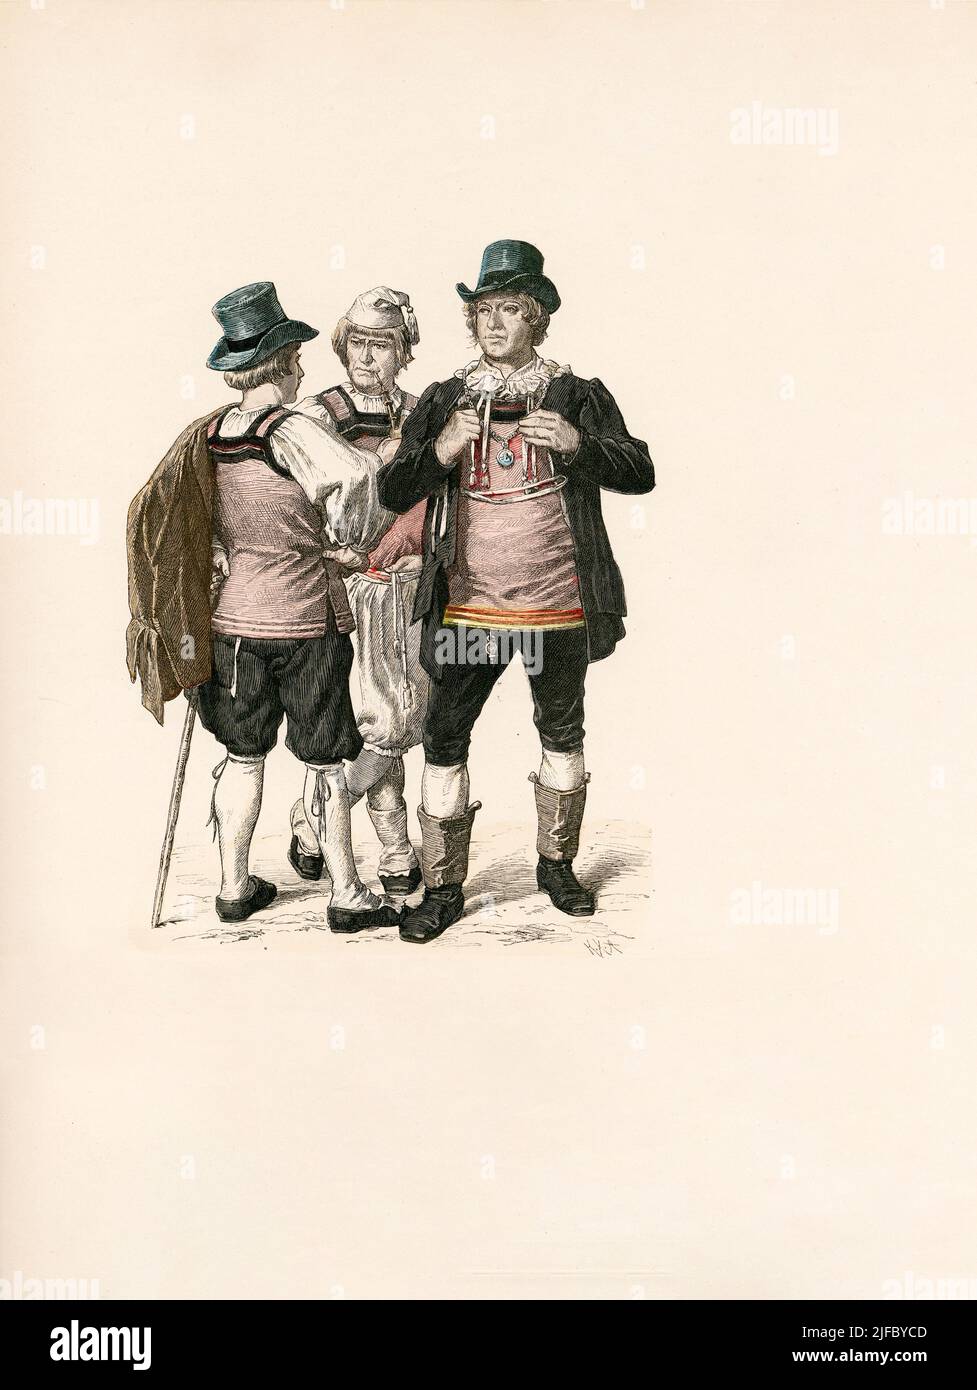 Hauenstein, German Folk Dress (former Grand-duchy of Baden), late 19th Century, Illustration, The History of Costume, Braun & Schneider, Munich, Germany, 1861-1880 Stock Photo